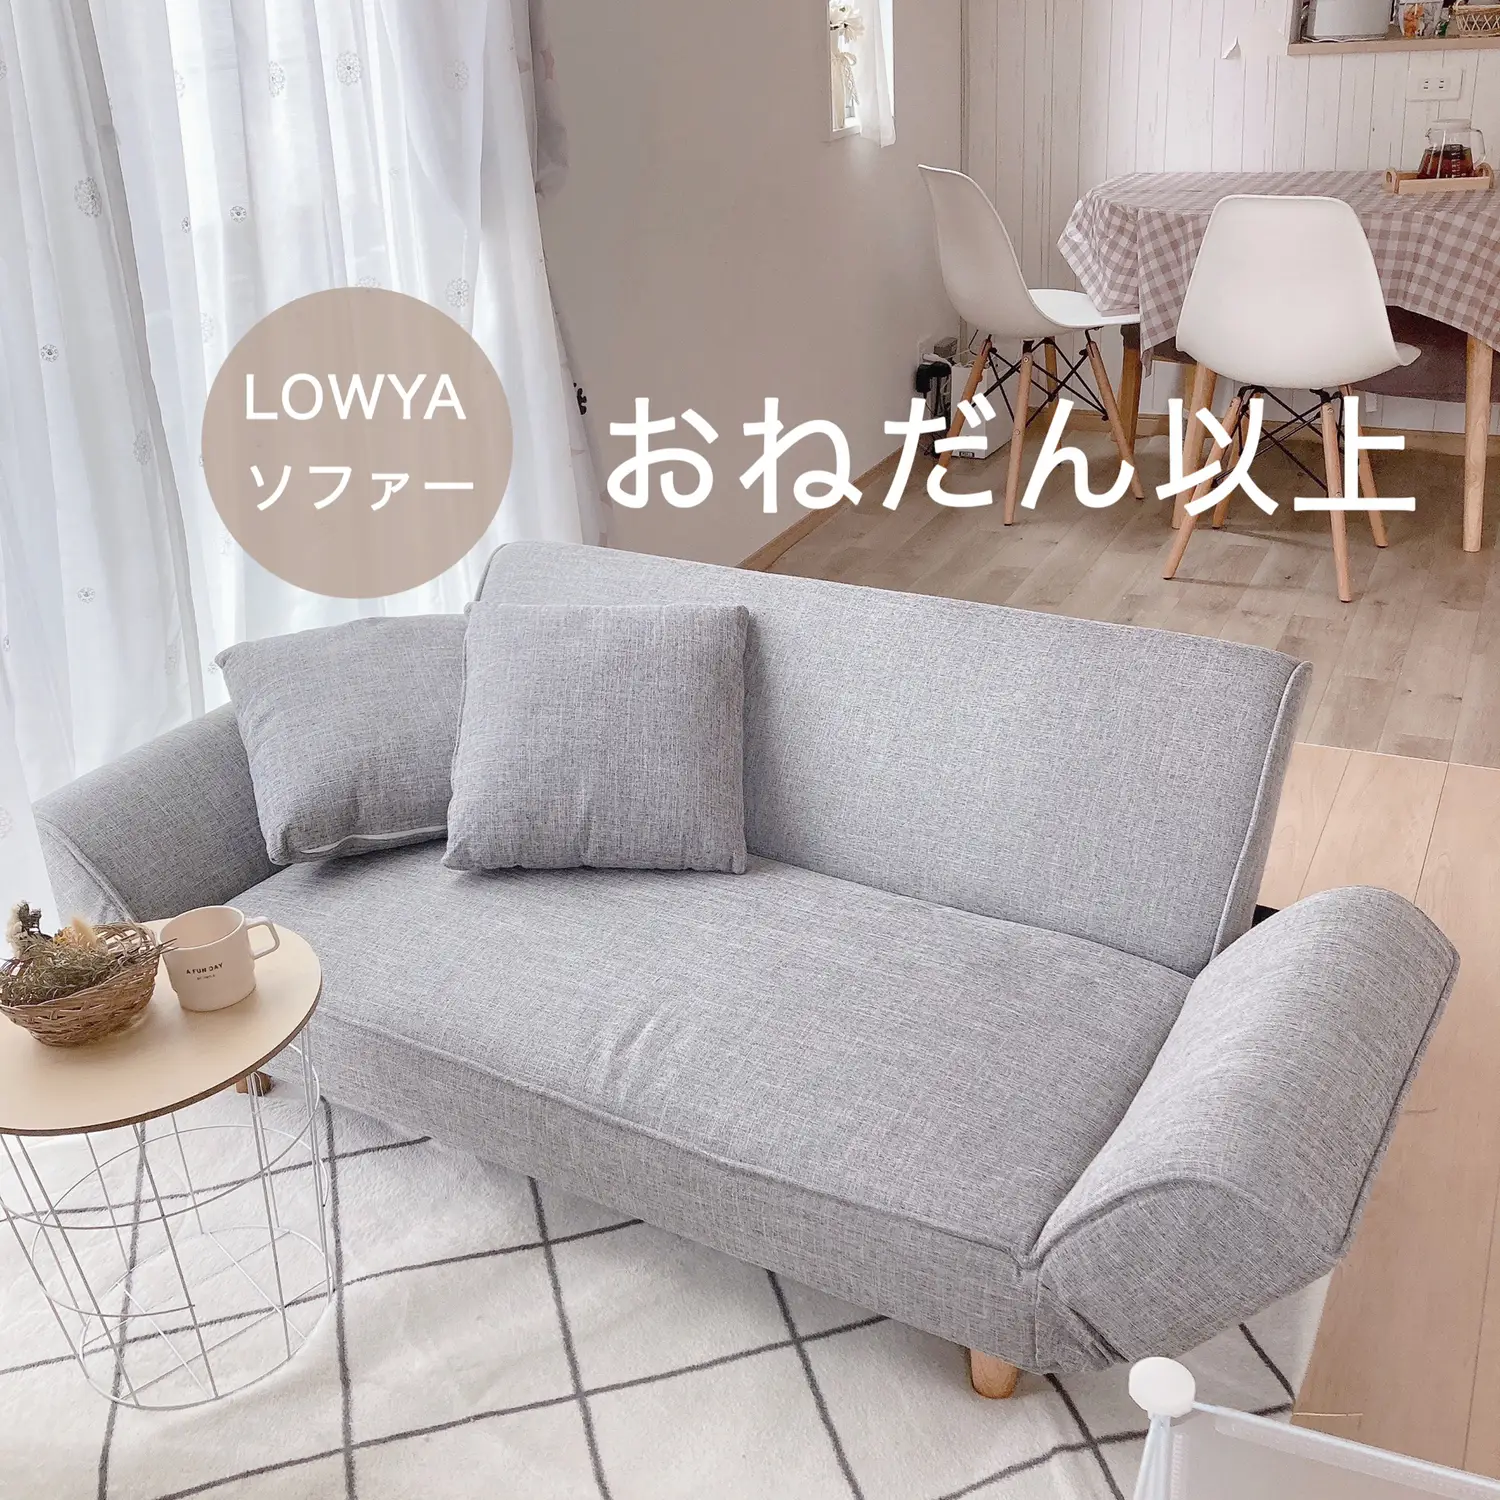 お値段以上！1万円台で買えるソファーベッドの画像 (1枚目)